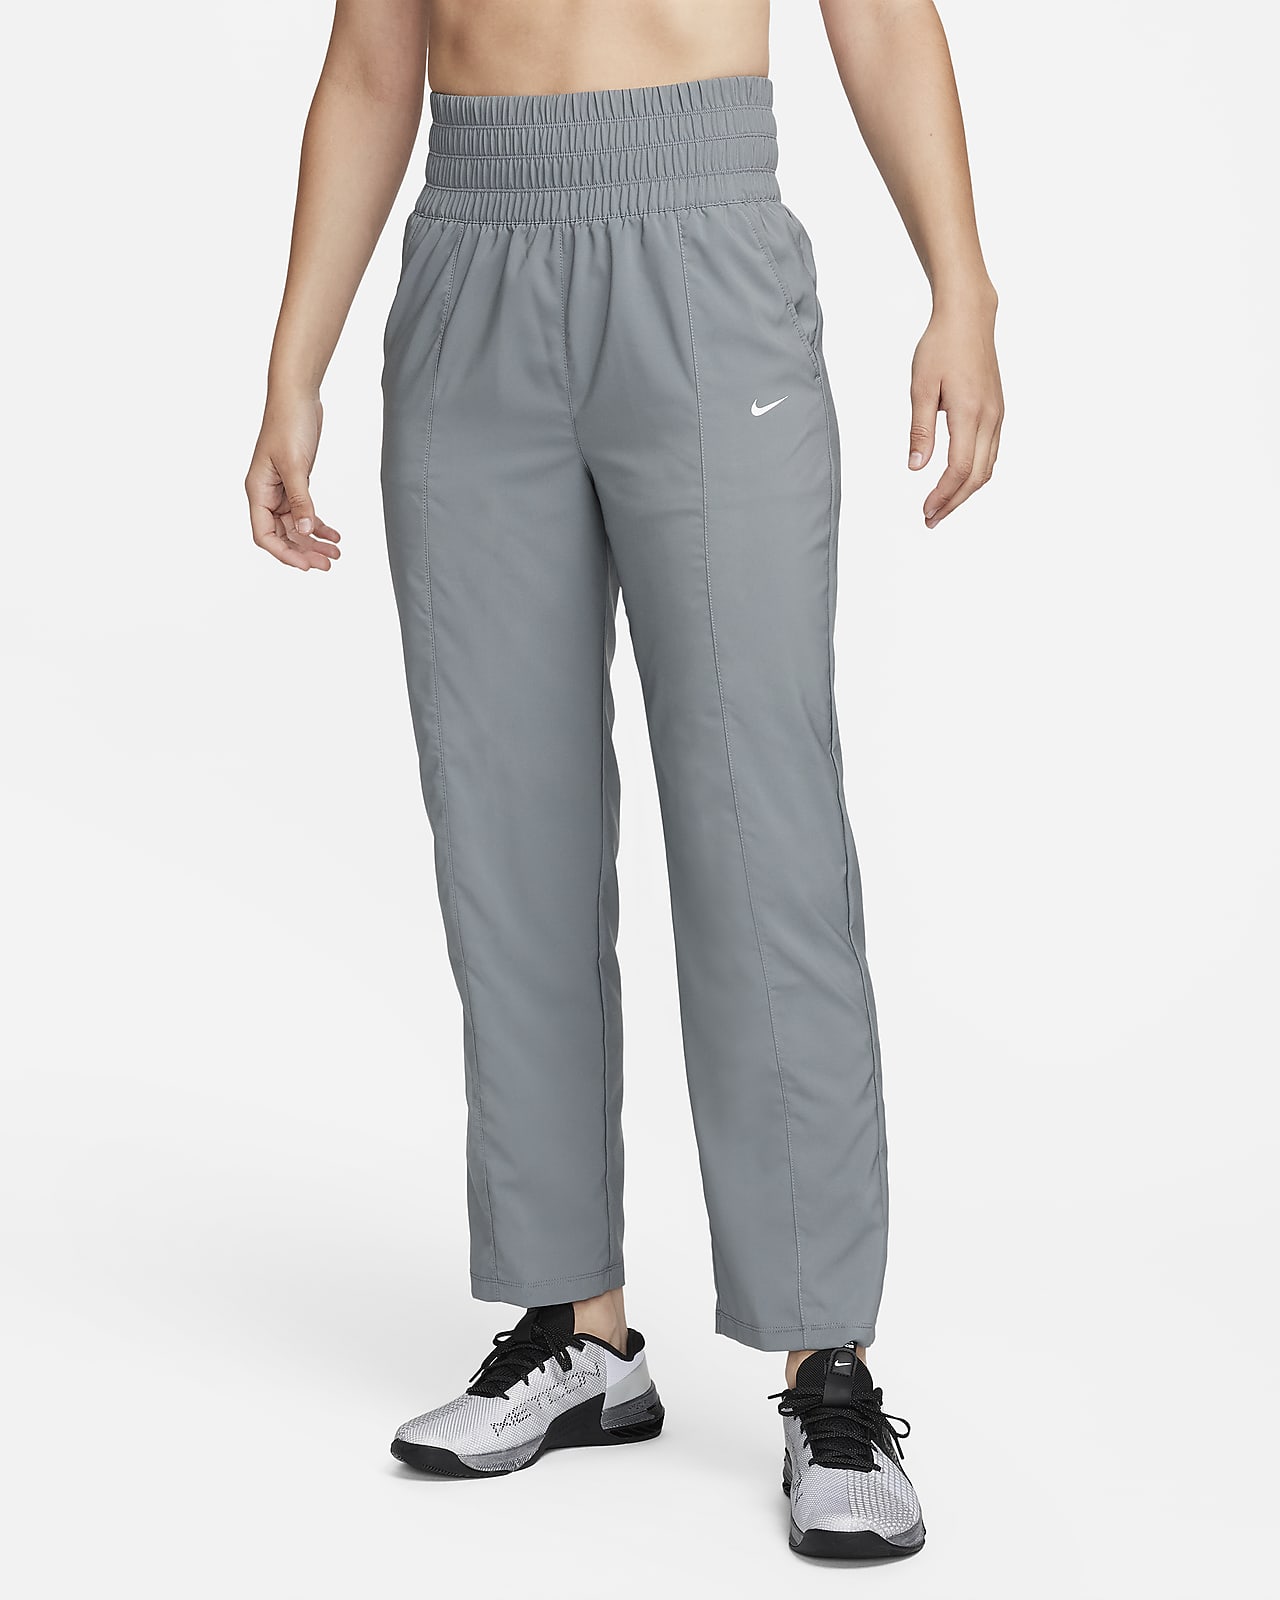 Pants de tiro ultraalto para mujer Nike Dri-FIT One